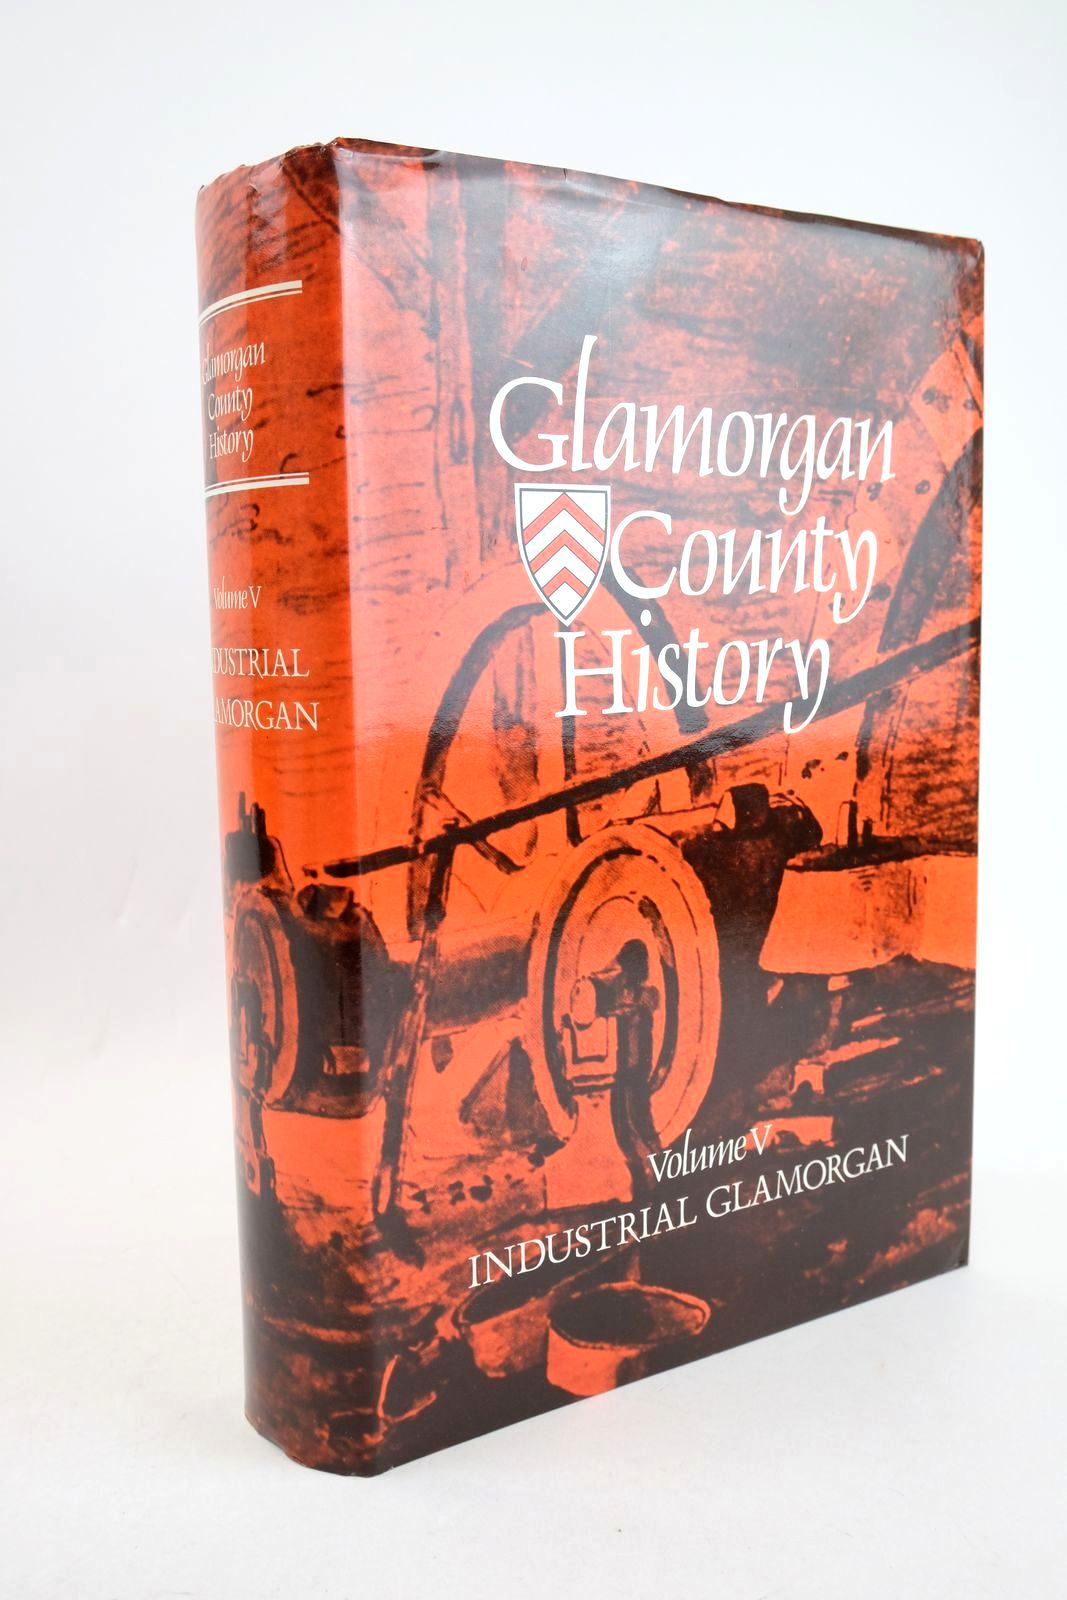 Glamorgan County History Volume V